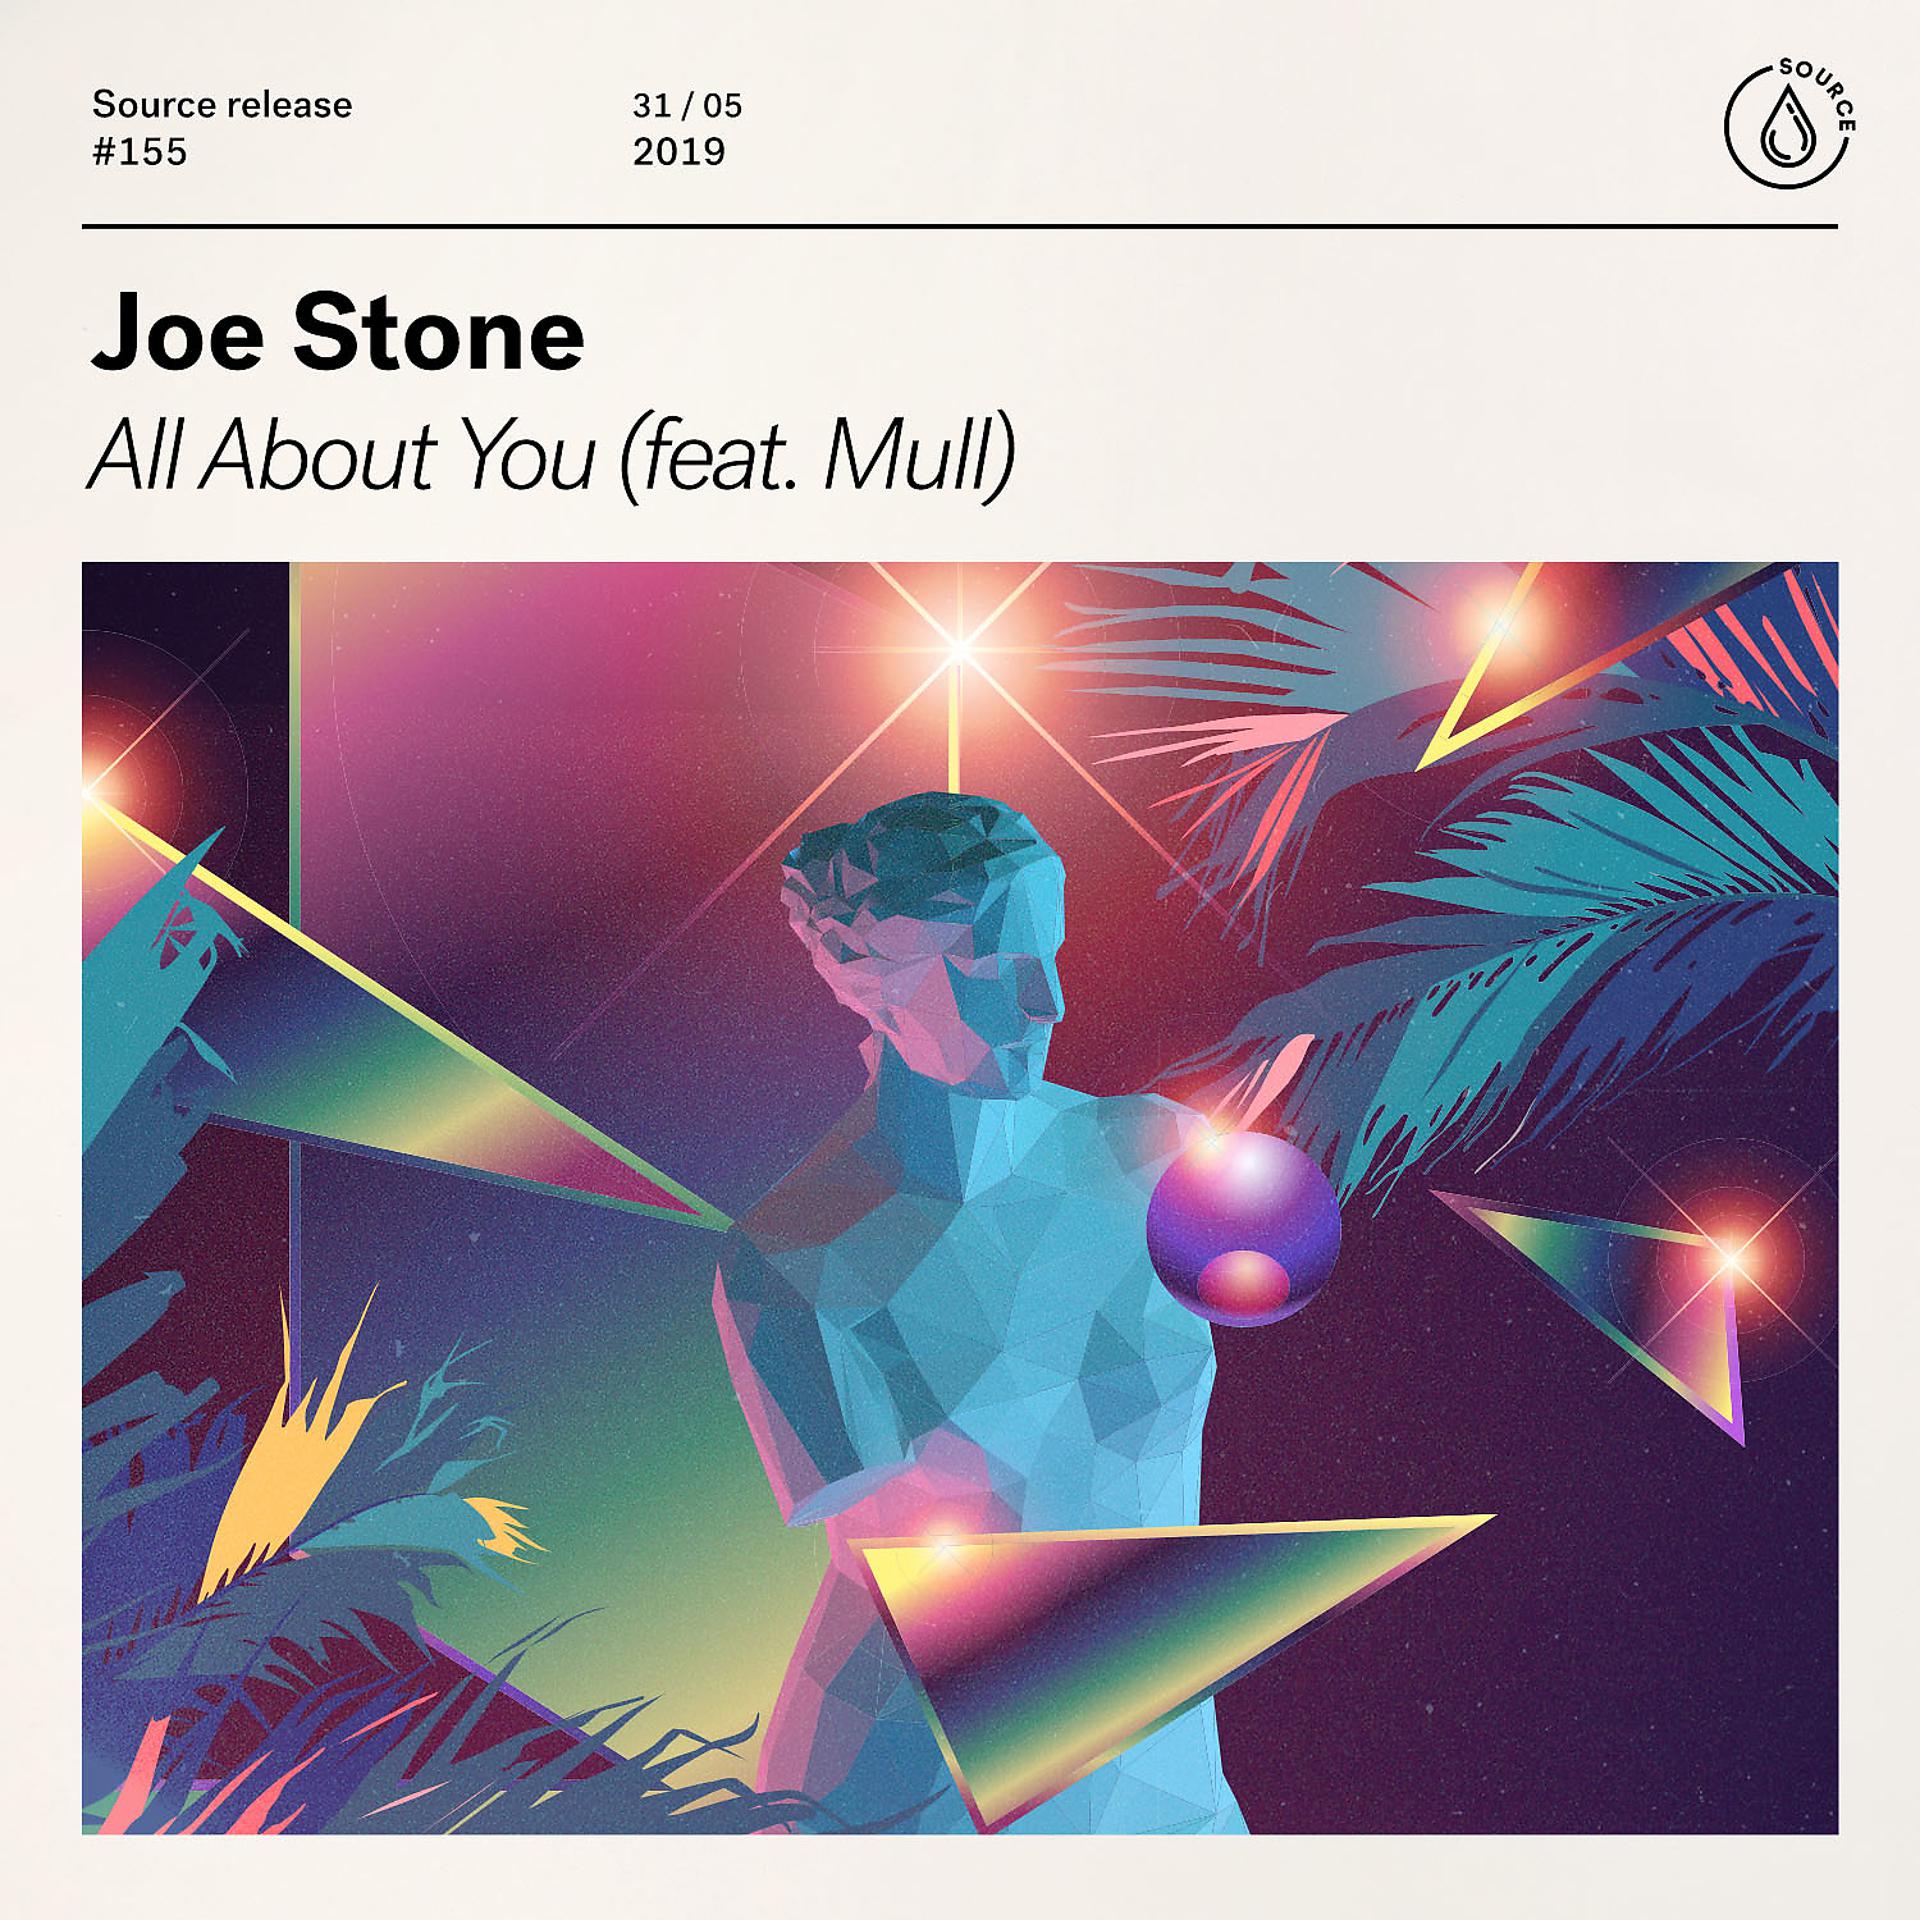 Joe Stone nothing else. Joe Stone make Love. Joe Stone - Lean on me.